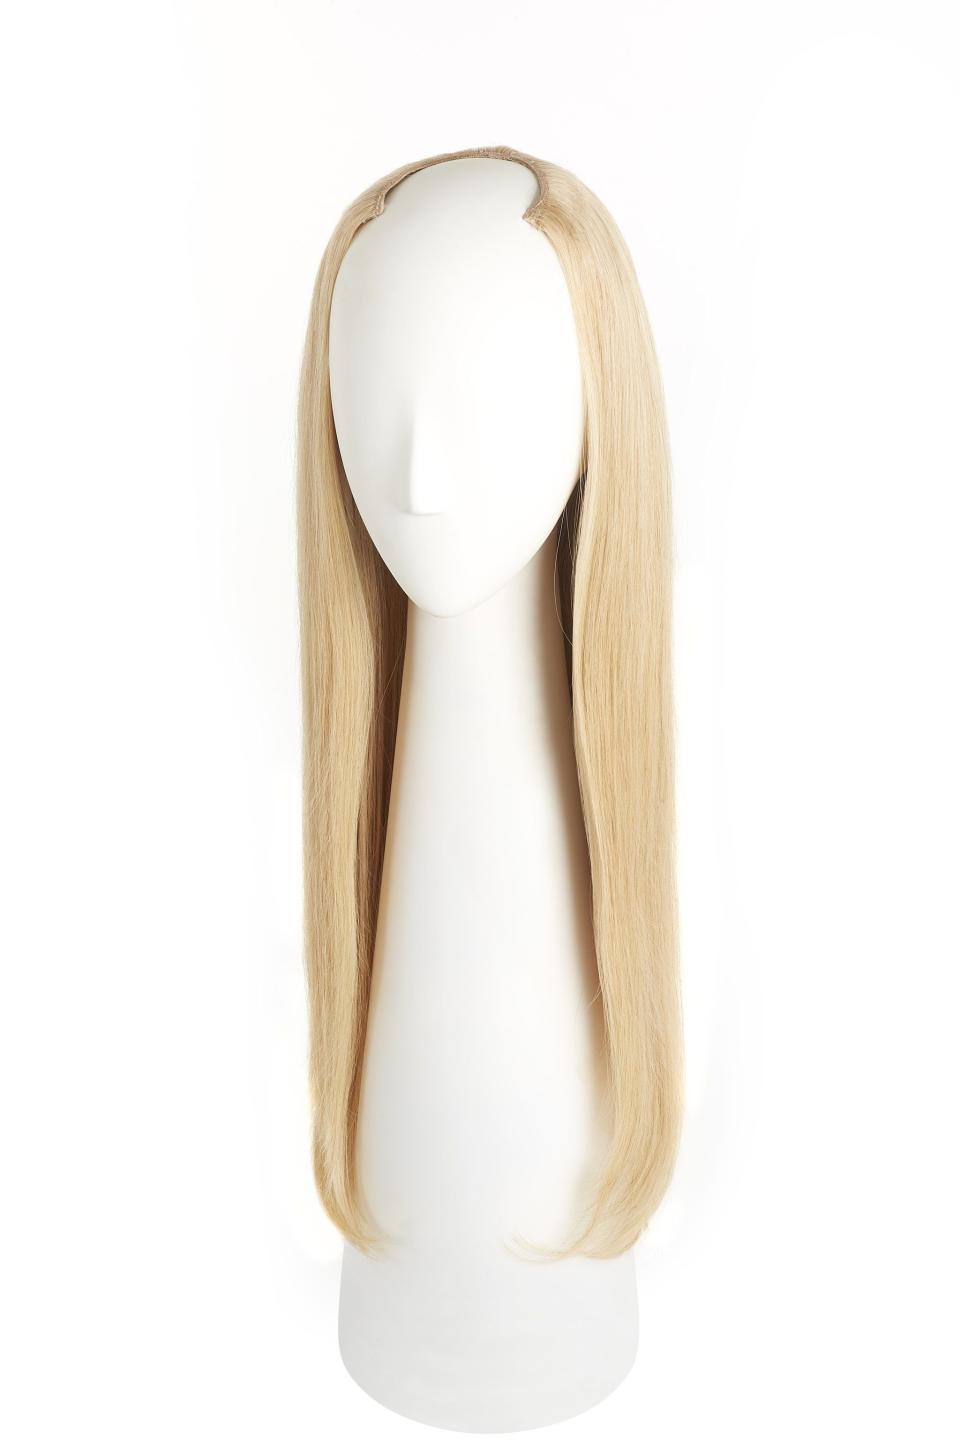 5) Golden Blonde U-Part Wig